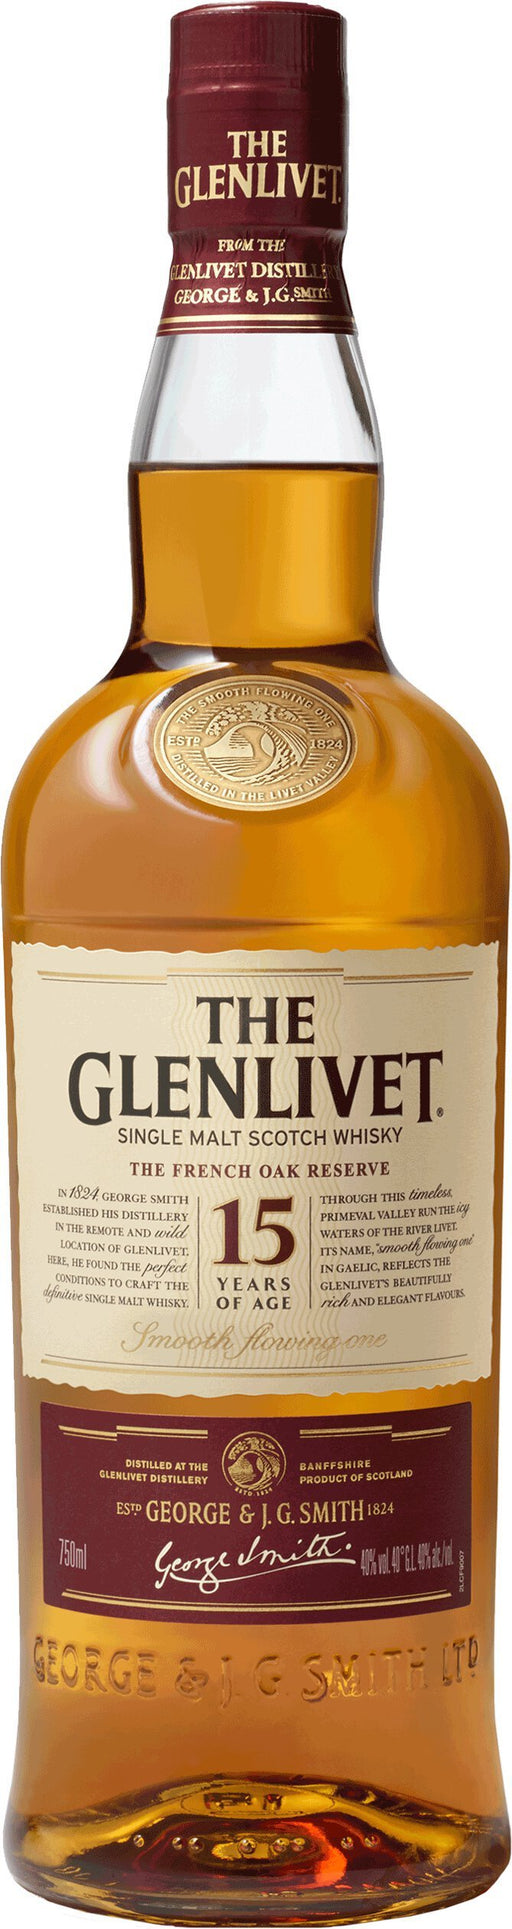 The Glenlivet Single Malt Scotch Whisky 15 Year - All Kosher Wines - kosher